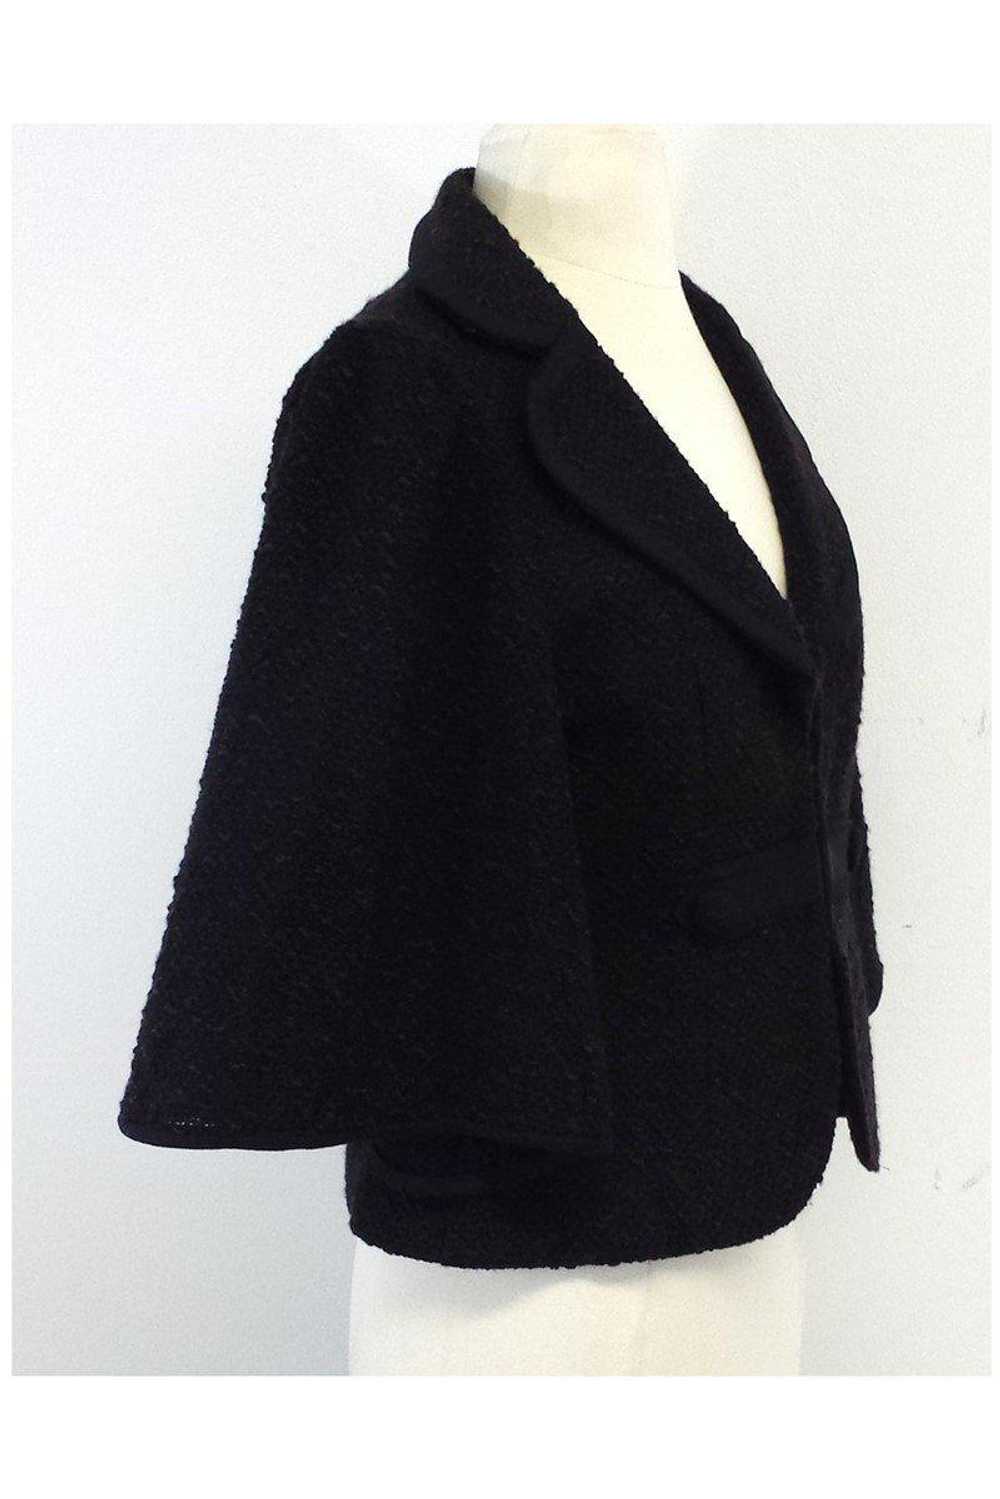 Nanette Lepore - Brown Textured Suit Jacket Sz M - image 2